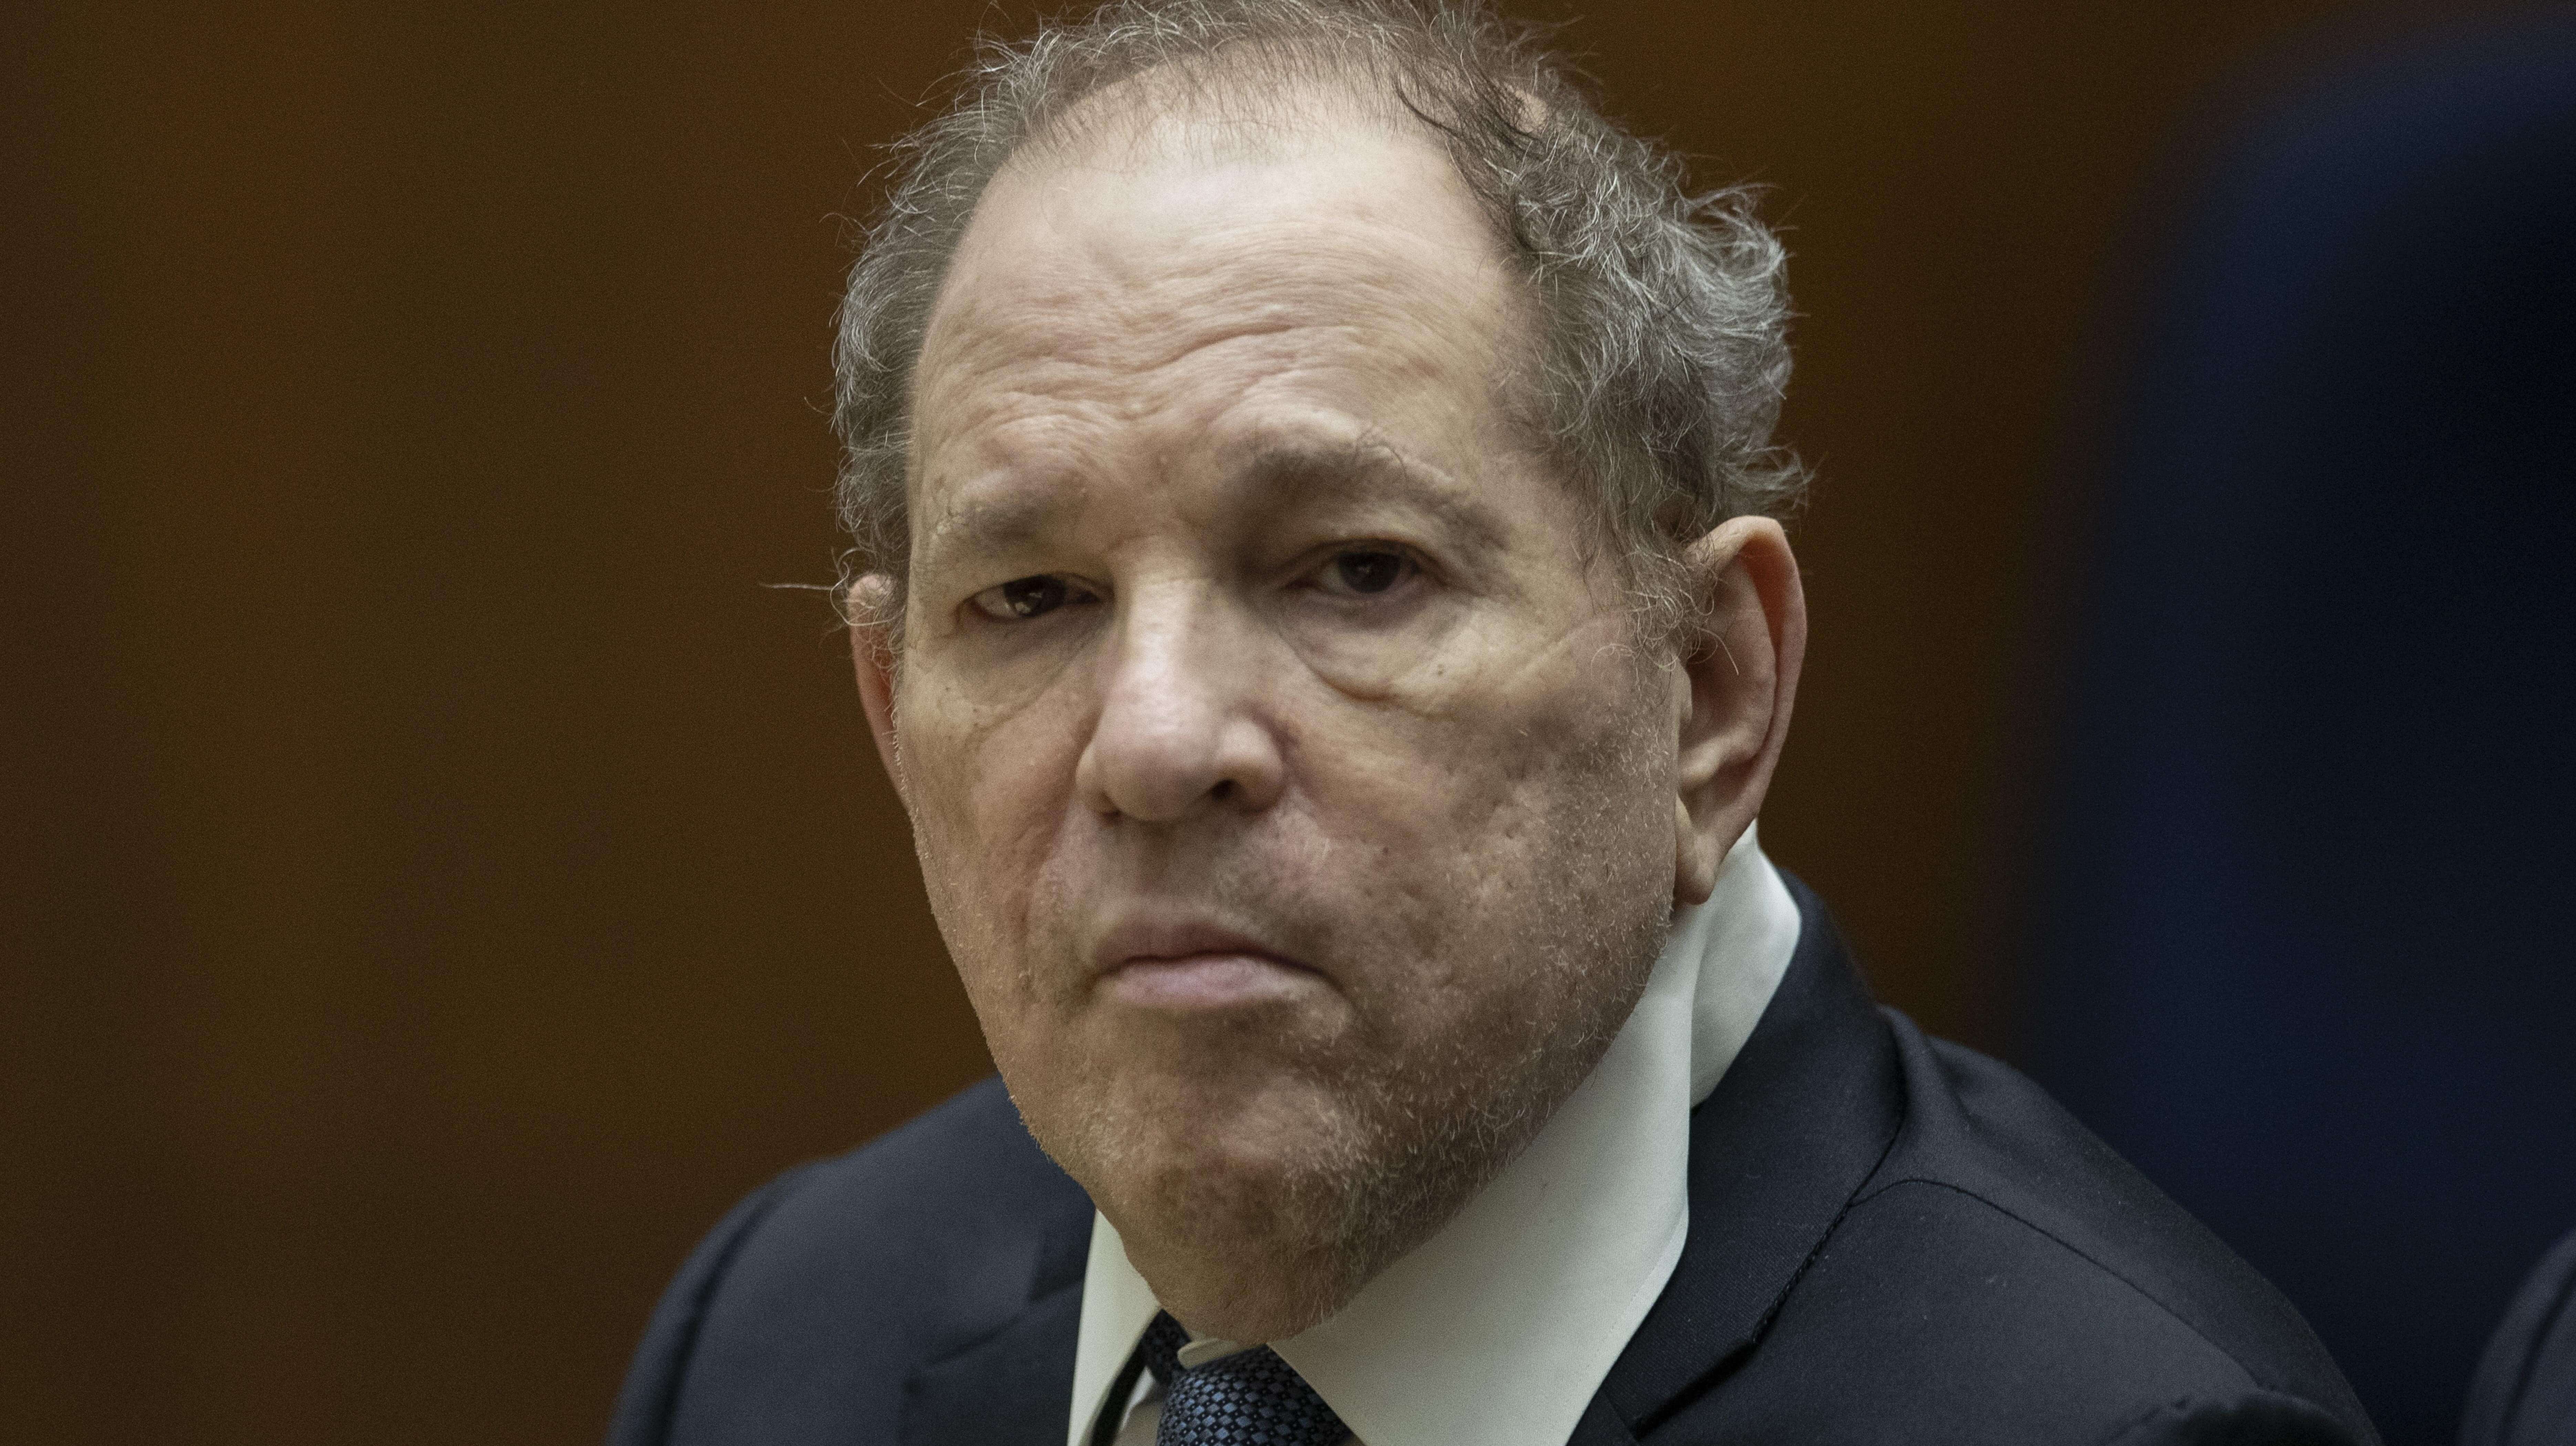 Harvey Weinstein’s rape conviction has been overturned